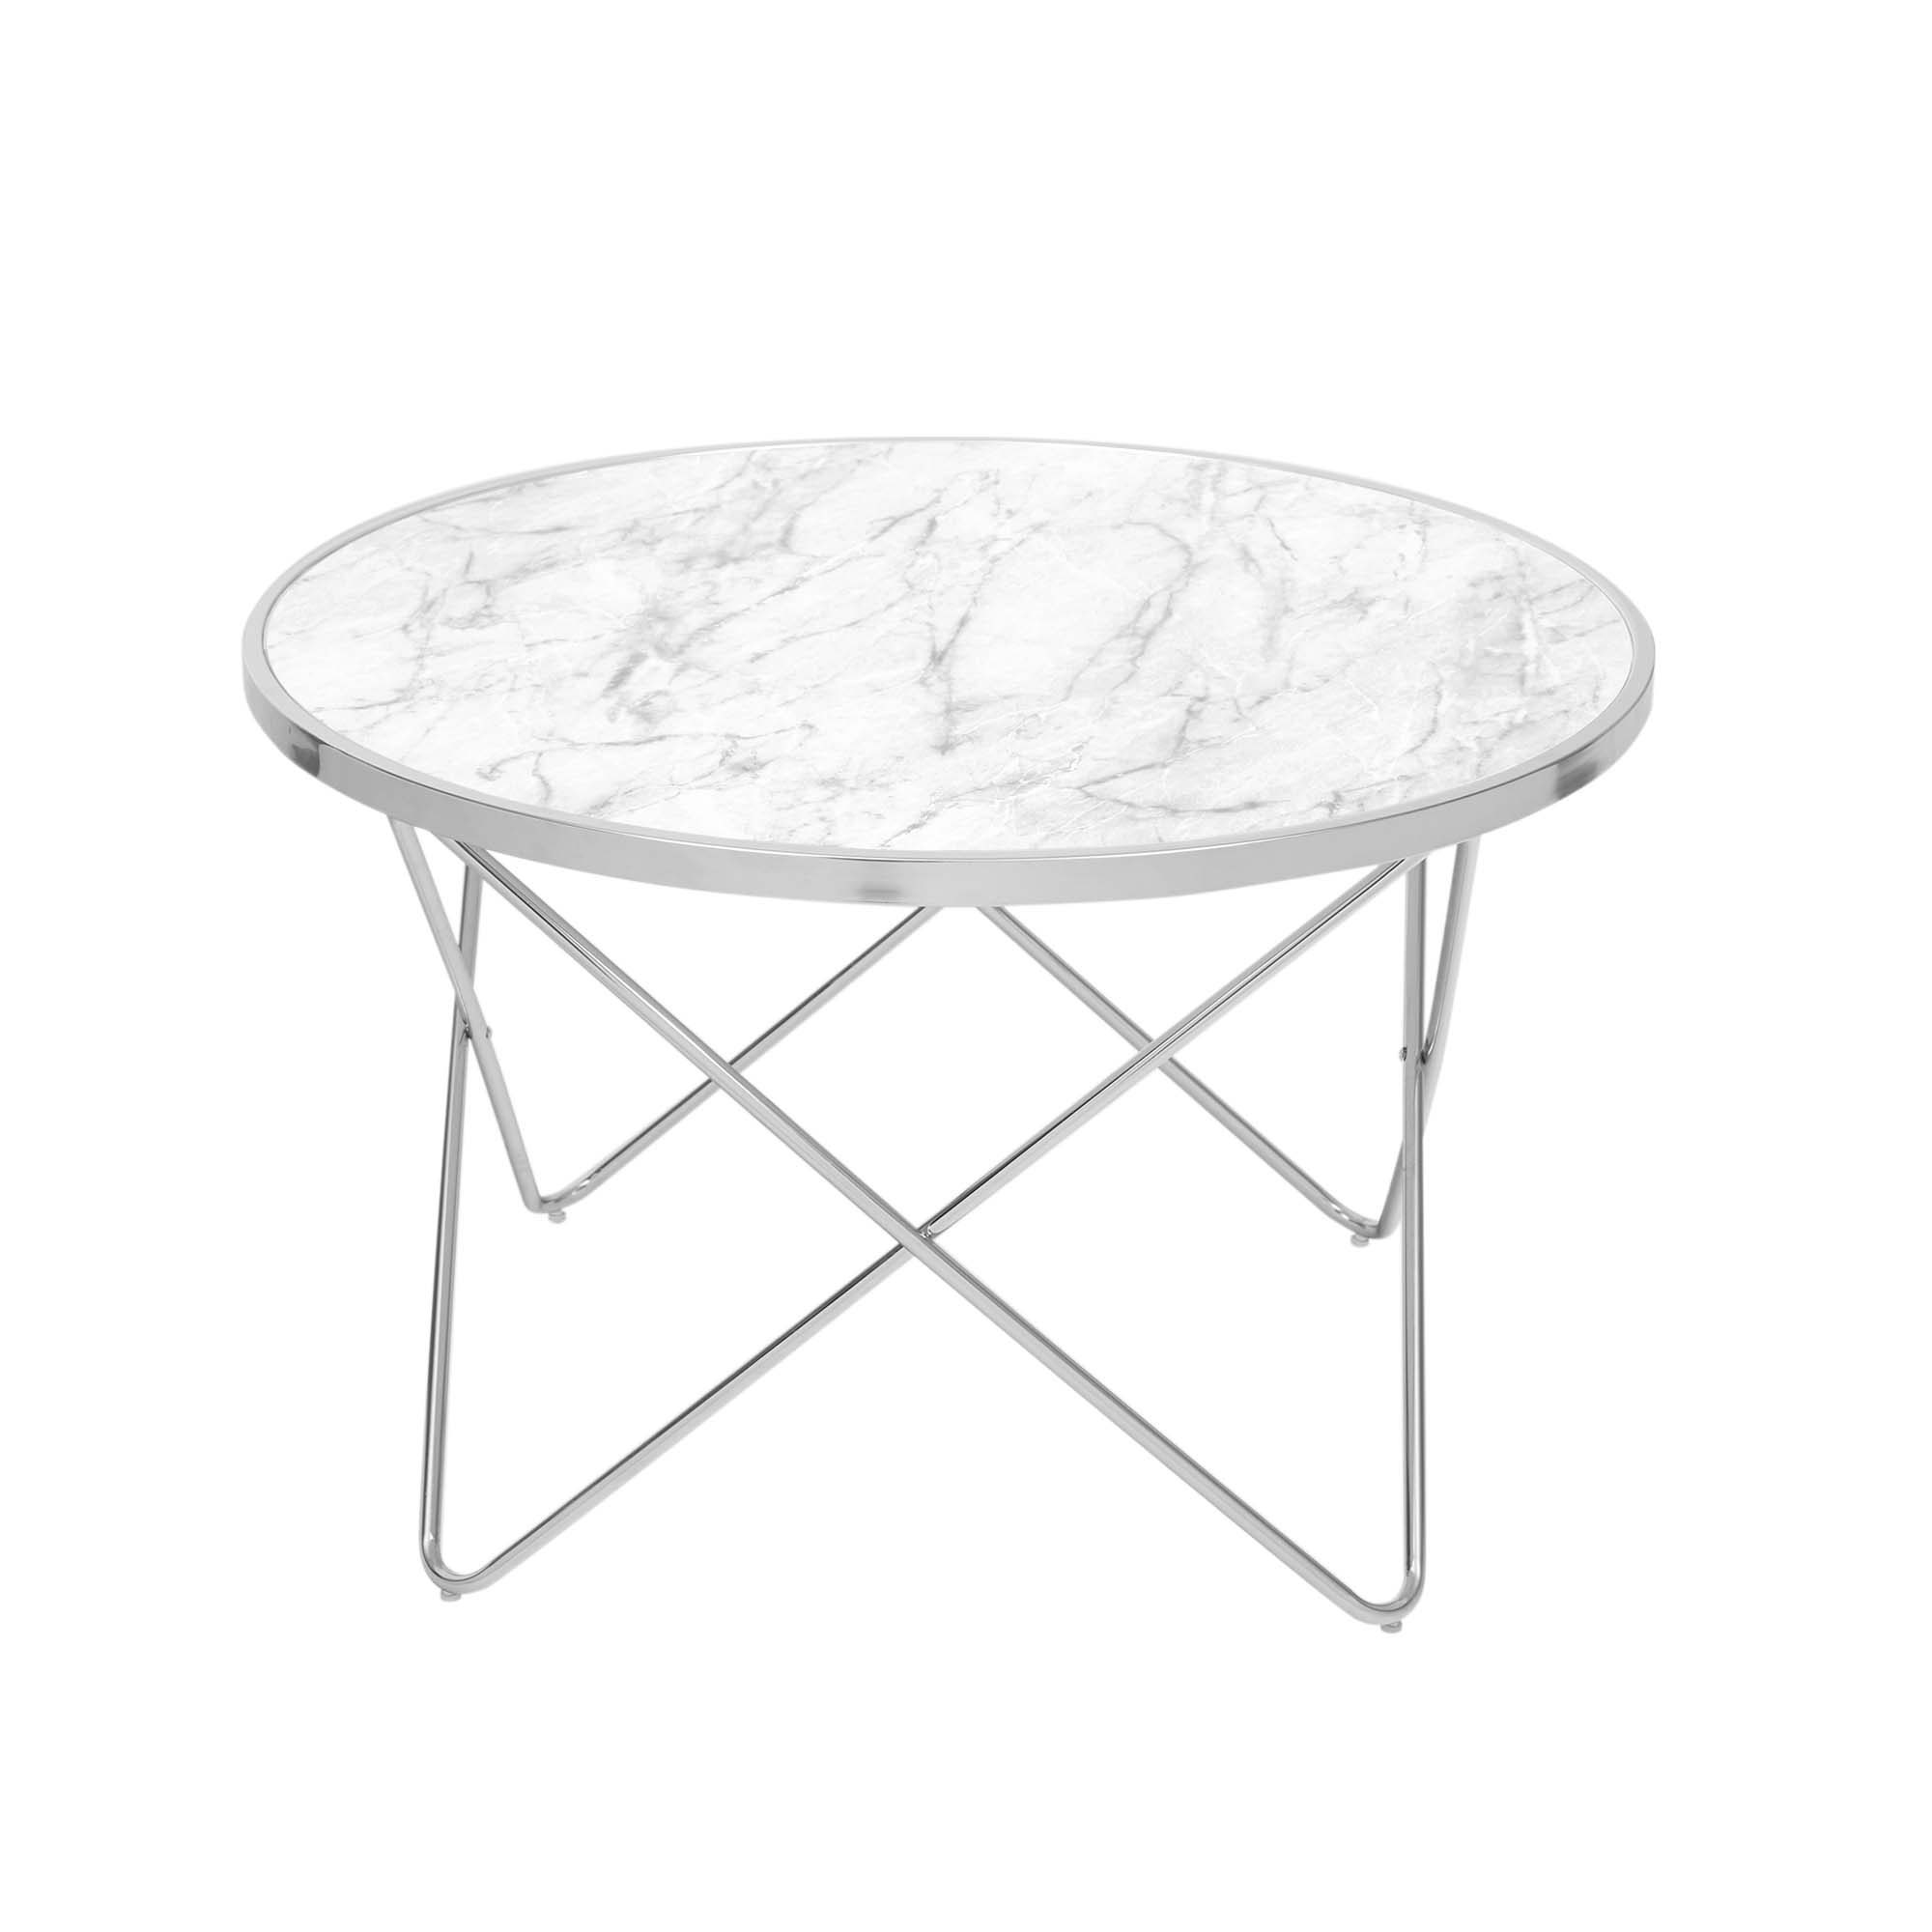 Teamson Home Margo Small Round Faux White Carrara Marble Coffee Table, White